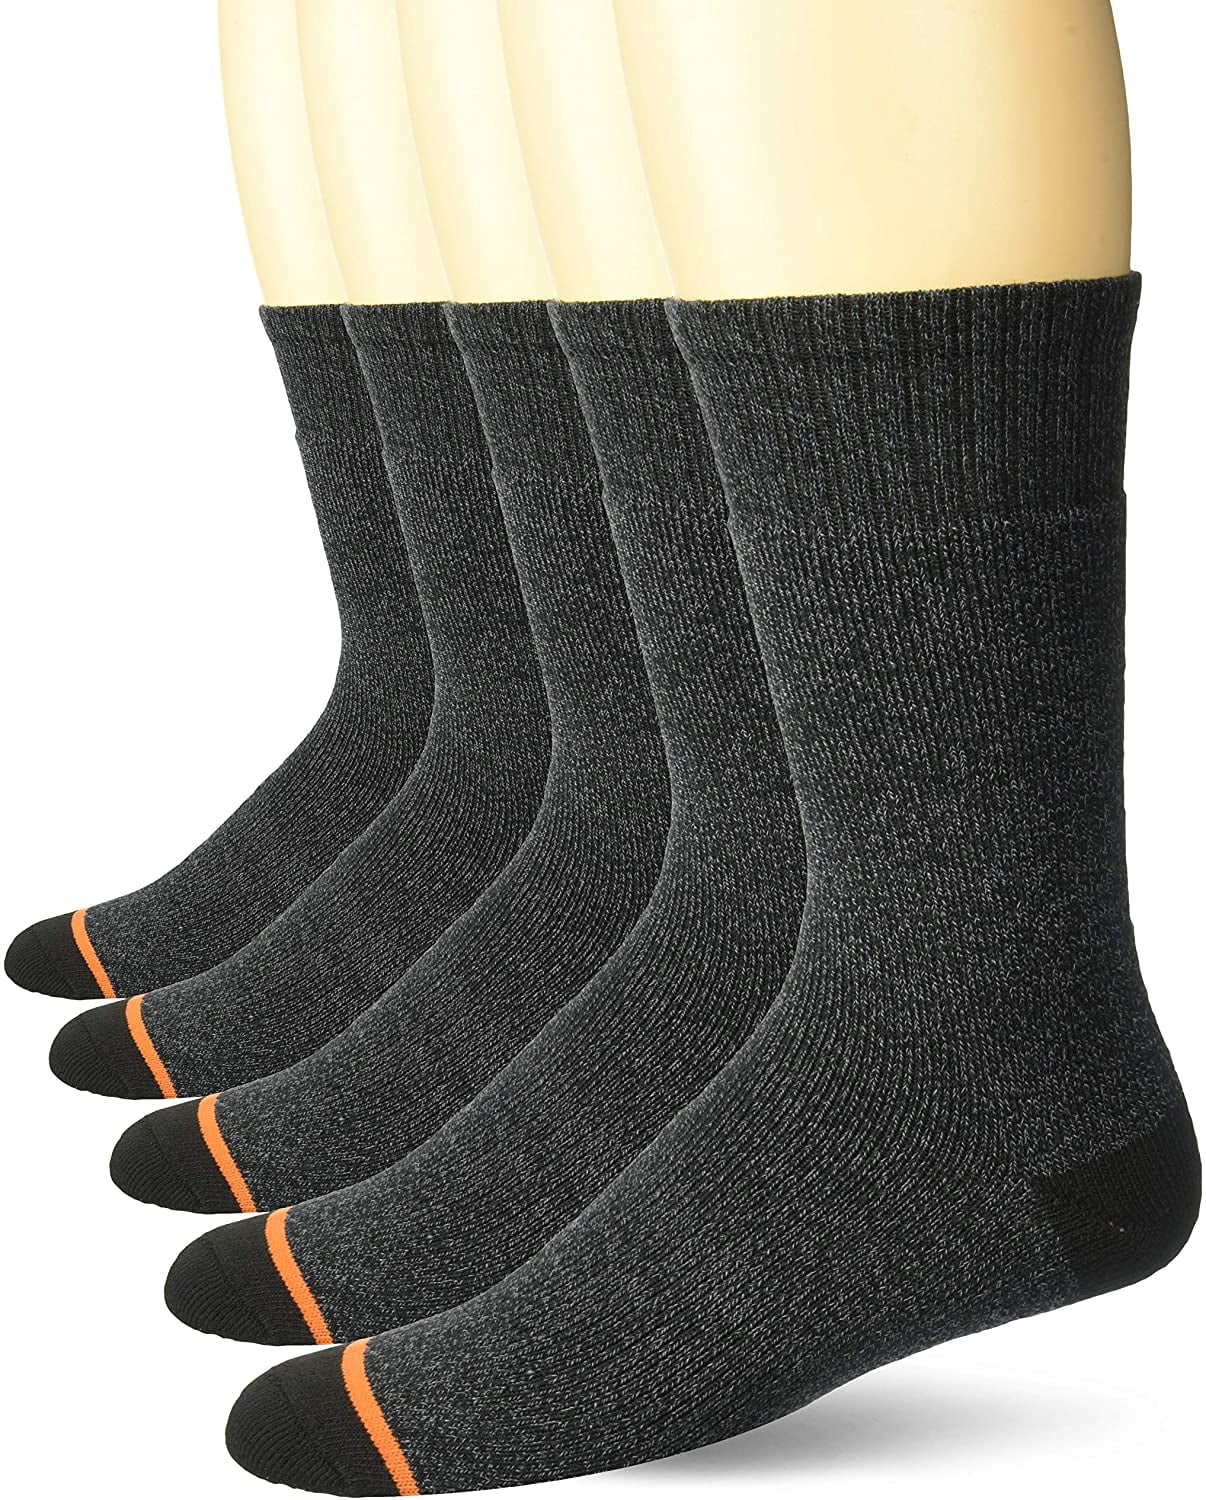 Men's 5 Pack Full Terry Thermal Crew Socks, - Walmart.com